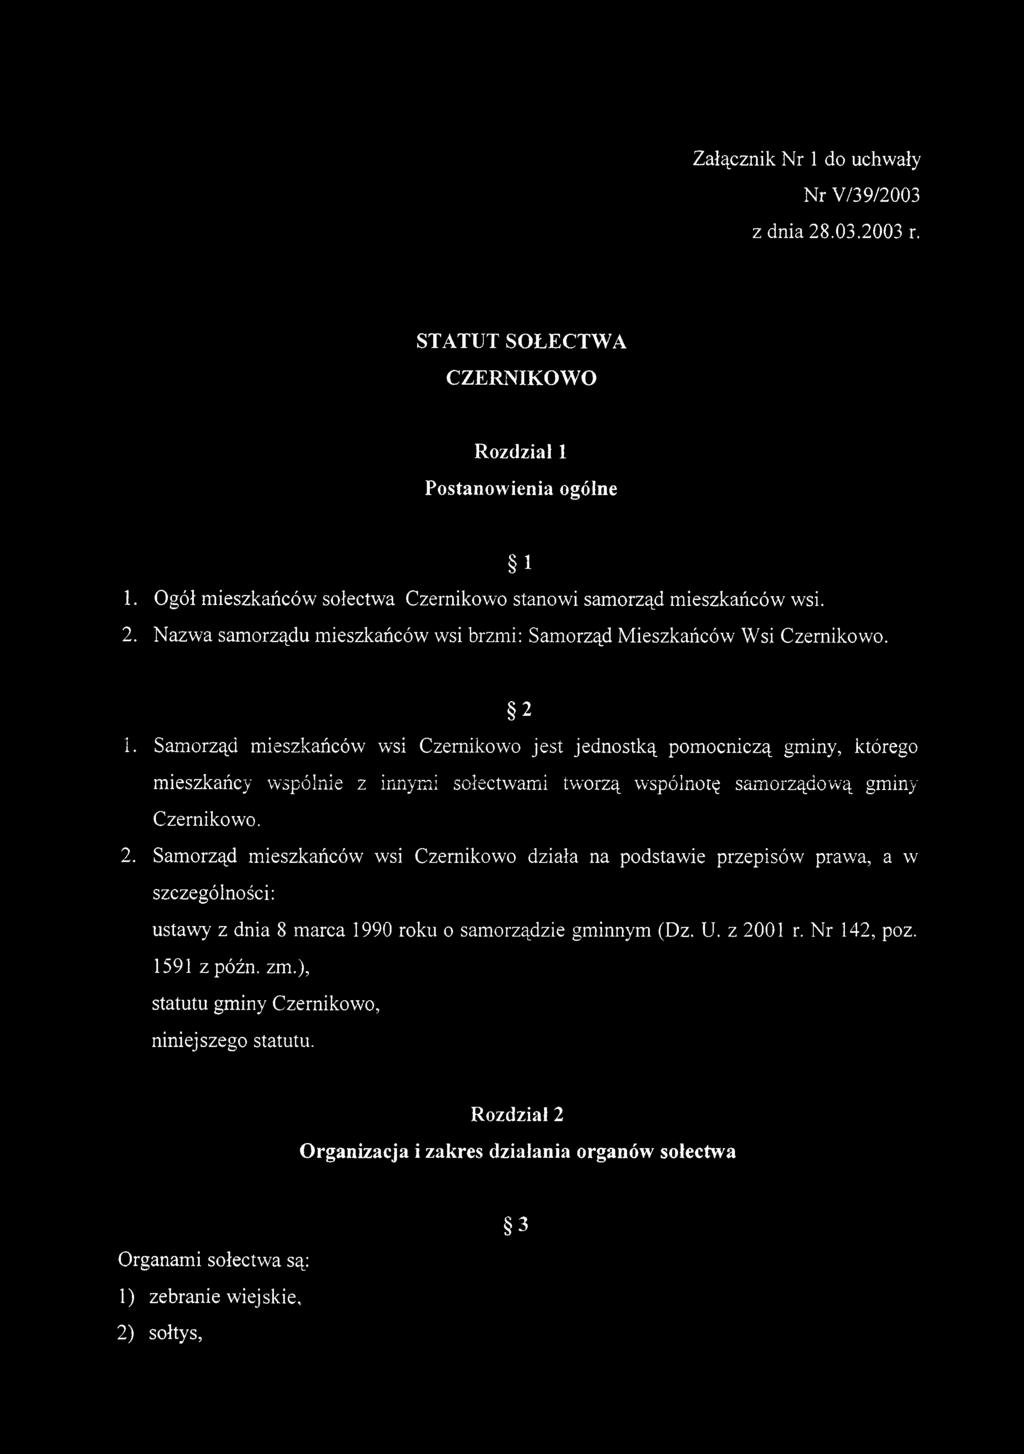 U. z 2001 r. Nr 142, poz. 1591 z późn. zm.), statutu gminy Czernikowo, niniejszego statutu.